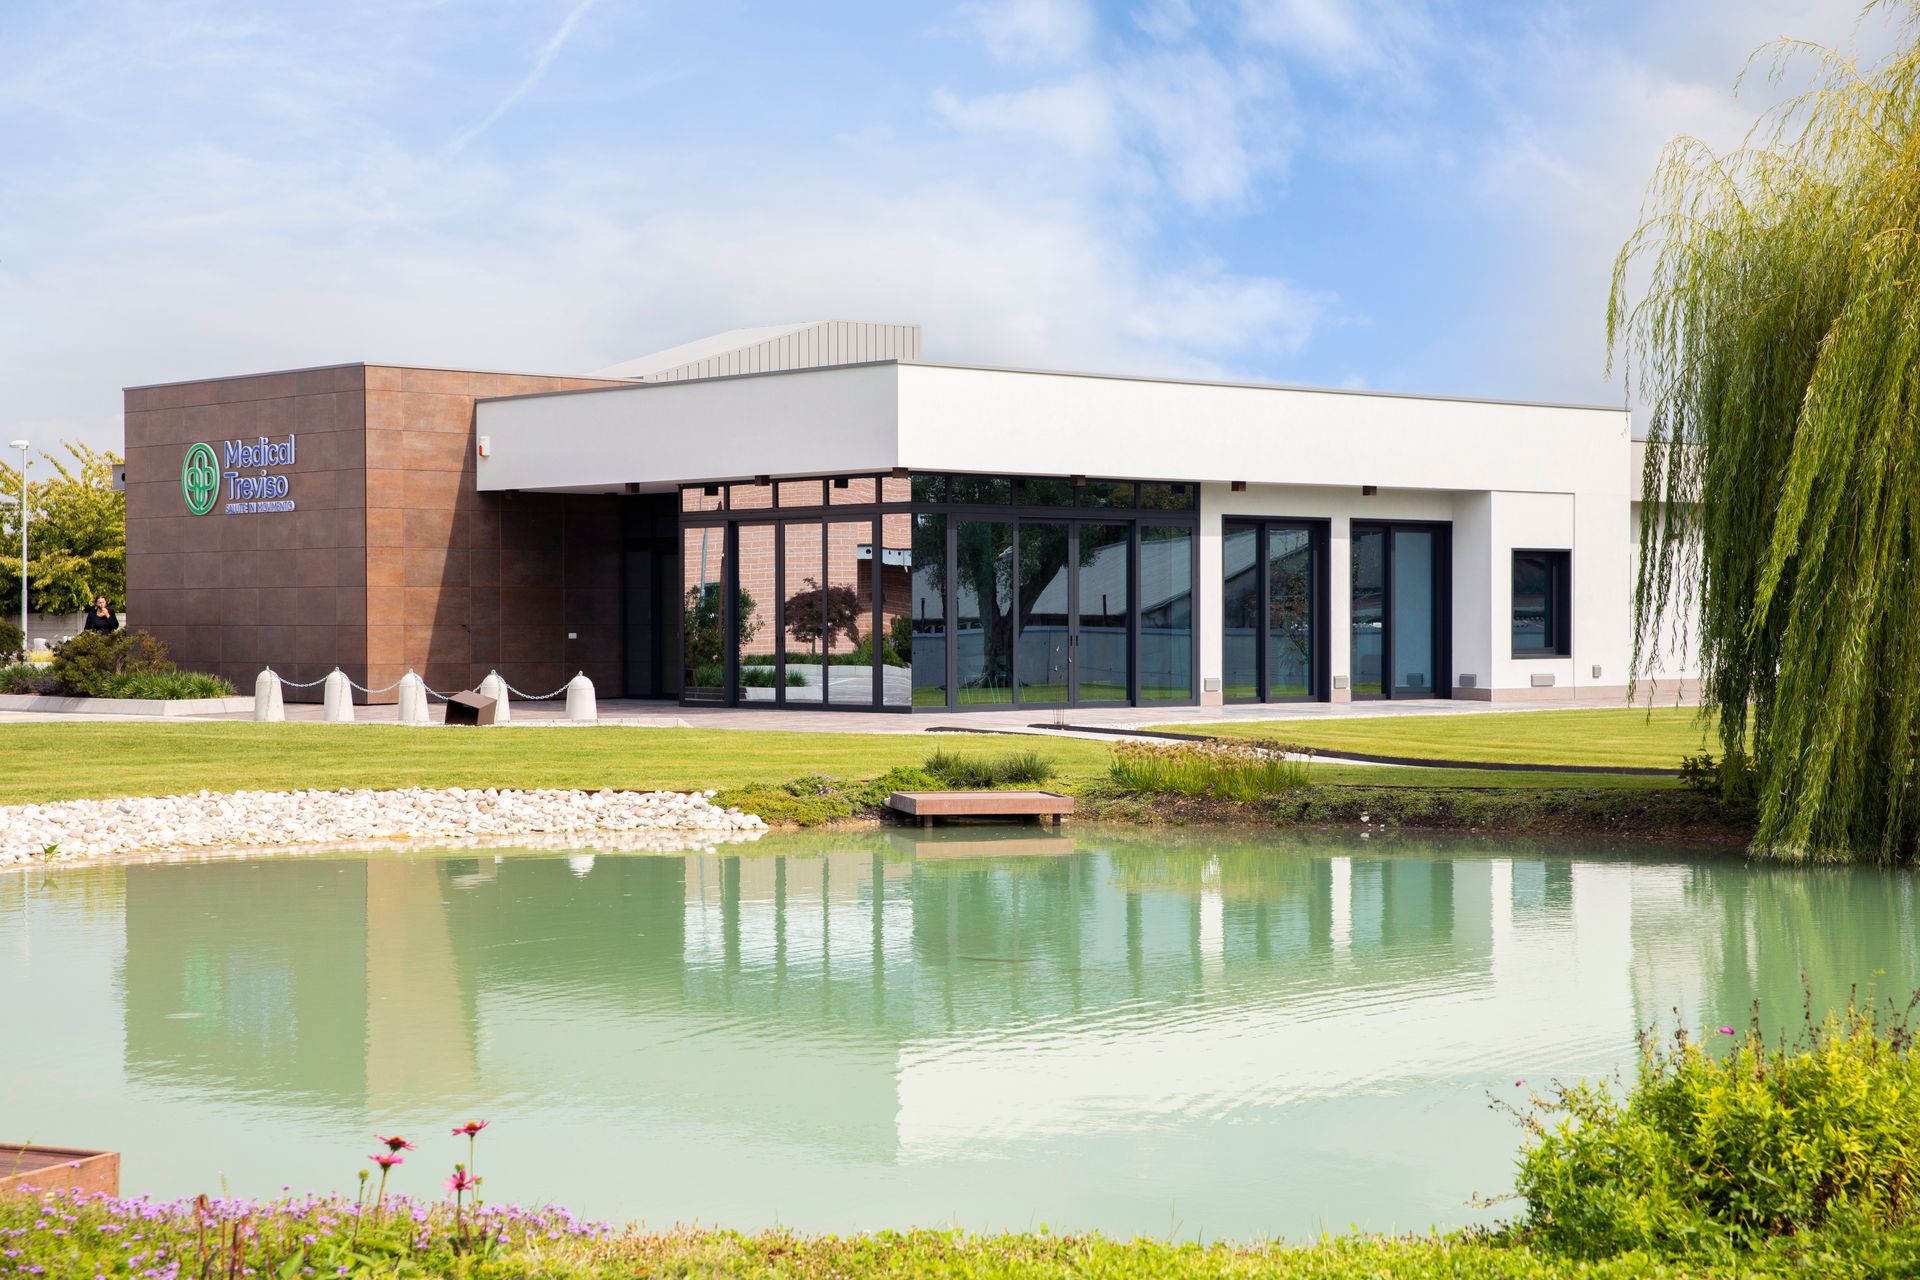 Il nuovo centro medico privato autorizzato "Medical Treviso - Salute in Movimento" sorge in Veneto a Dosson di Casier: il laghetto esterno alla struttura, dotato di un’elegante cascatella